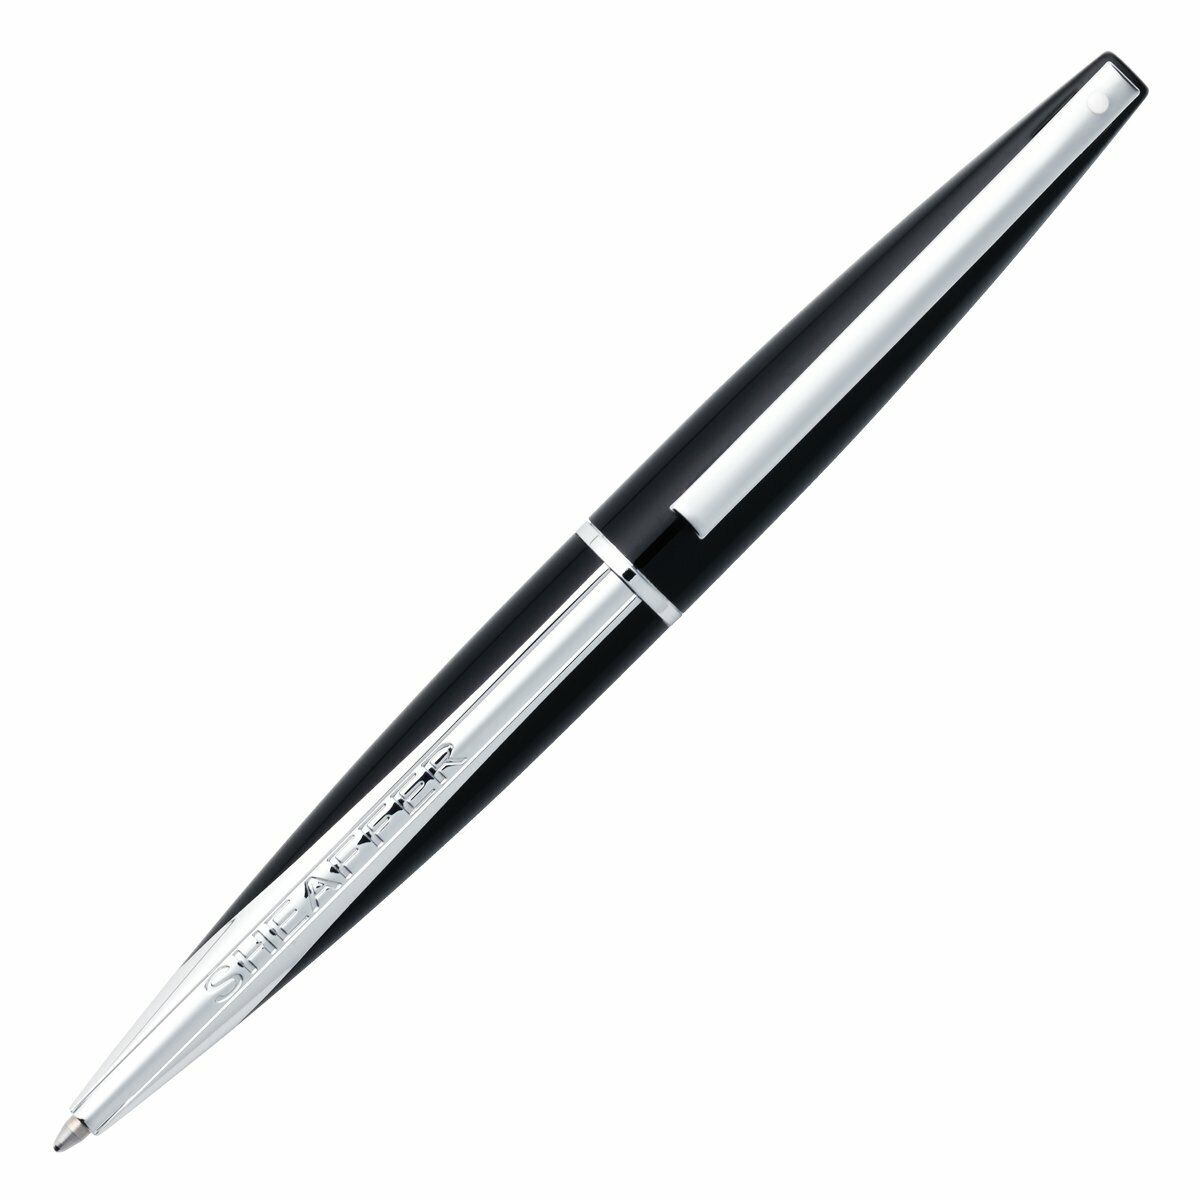 Sheaffer Taranis Ballpoint Pen, Matte Black Lacquer & Chrome, New In Box